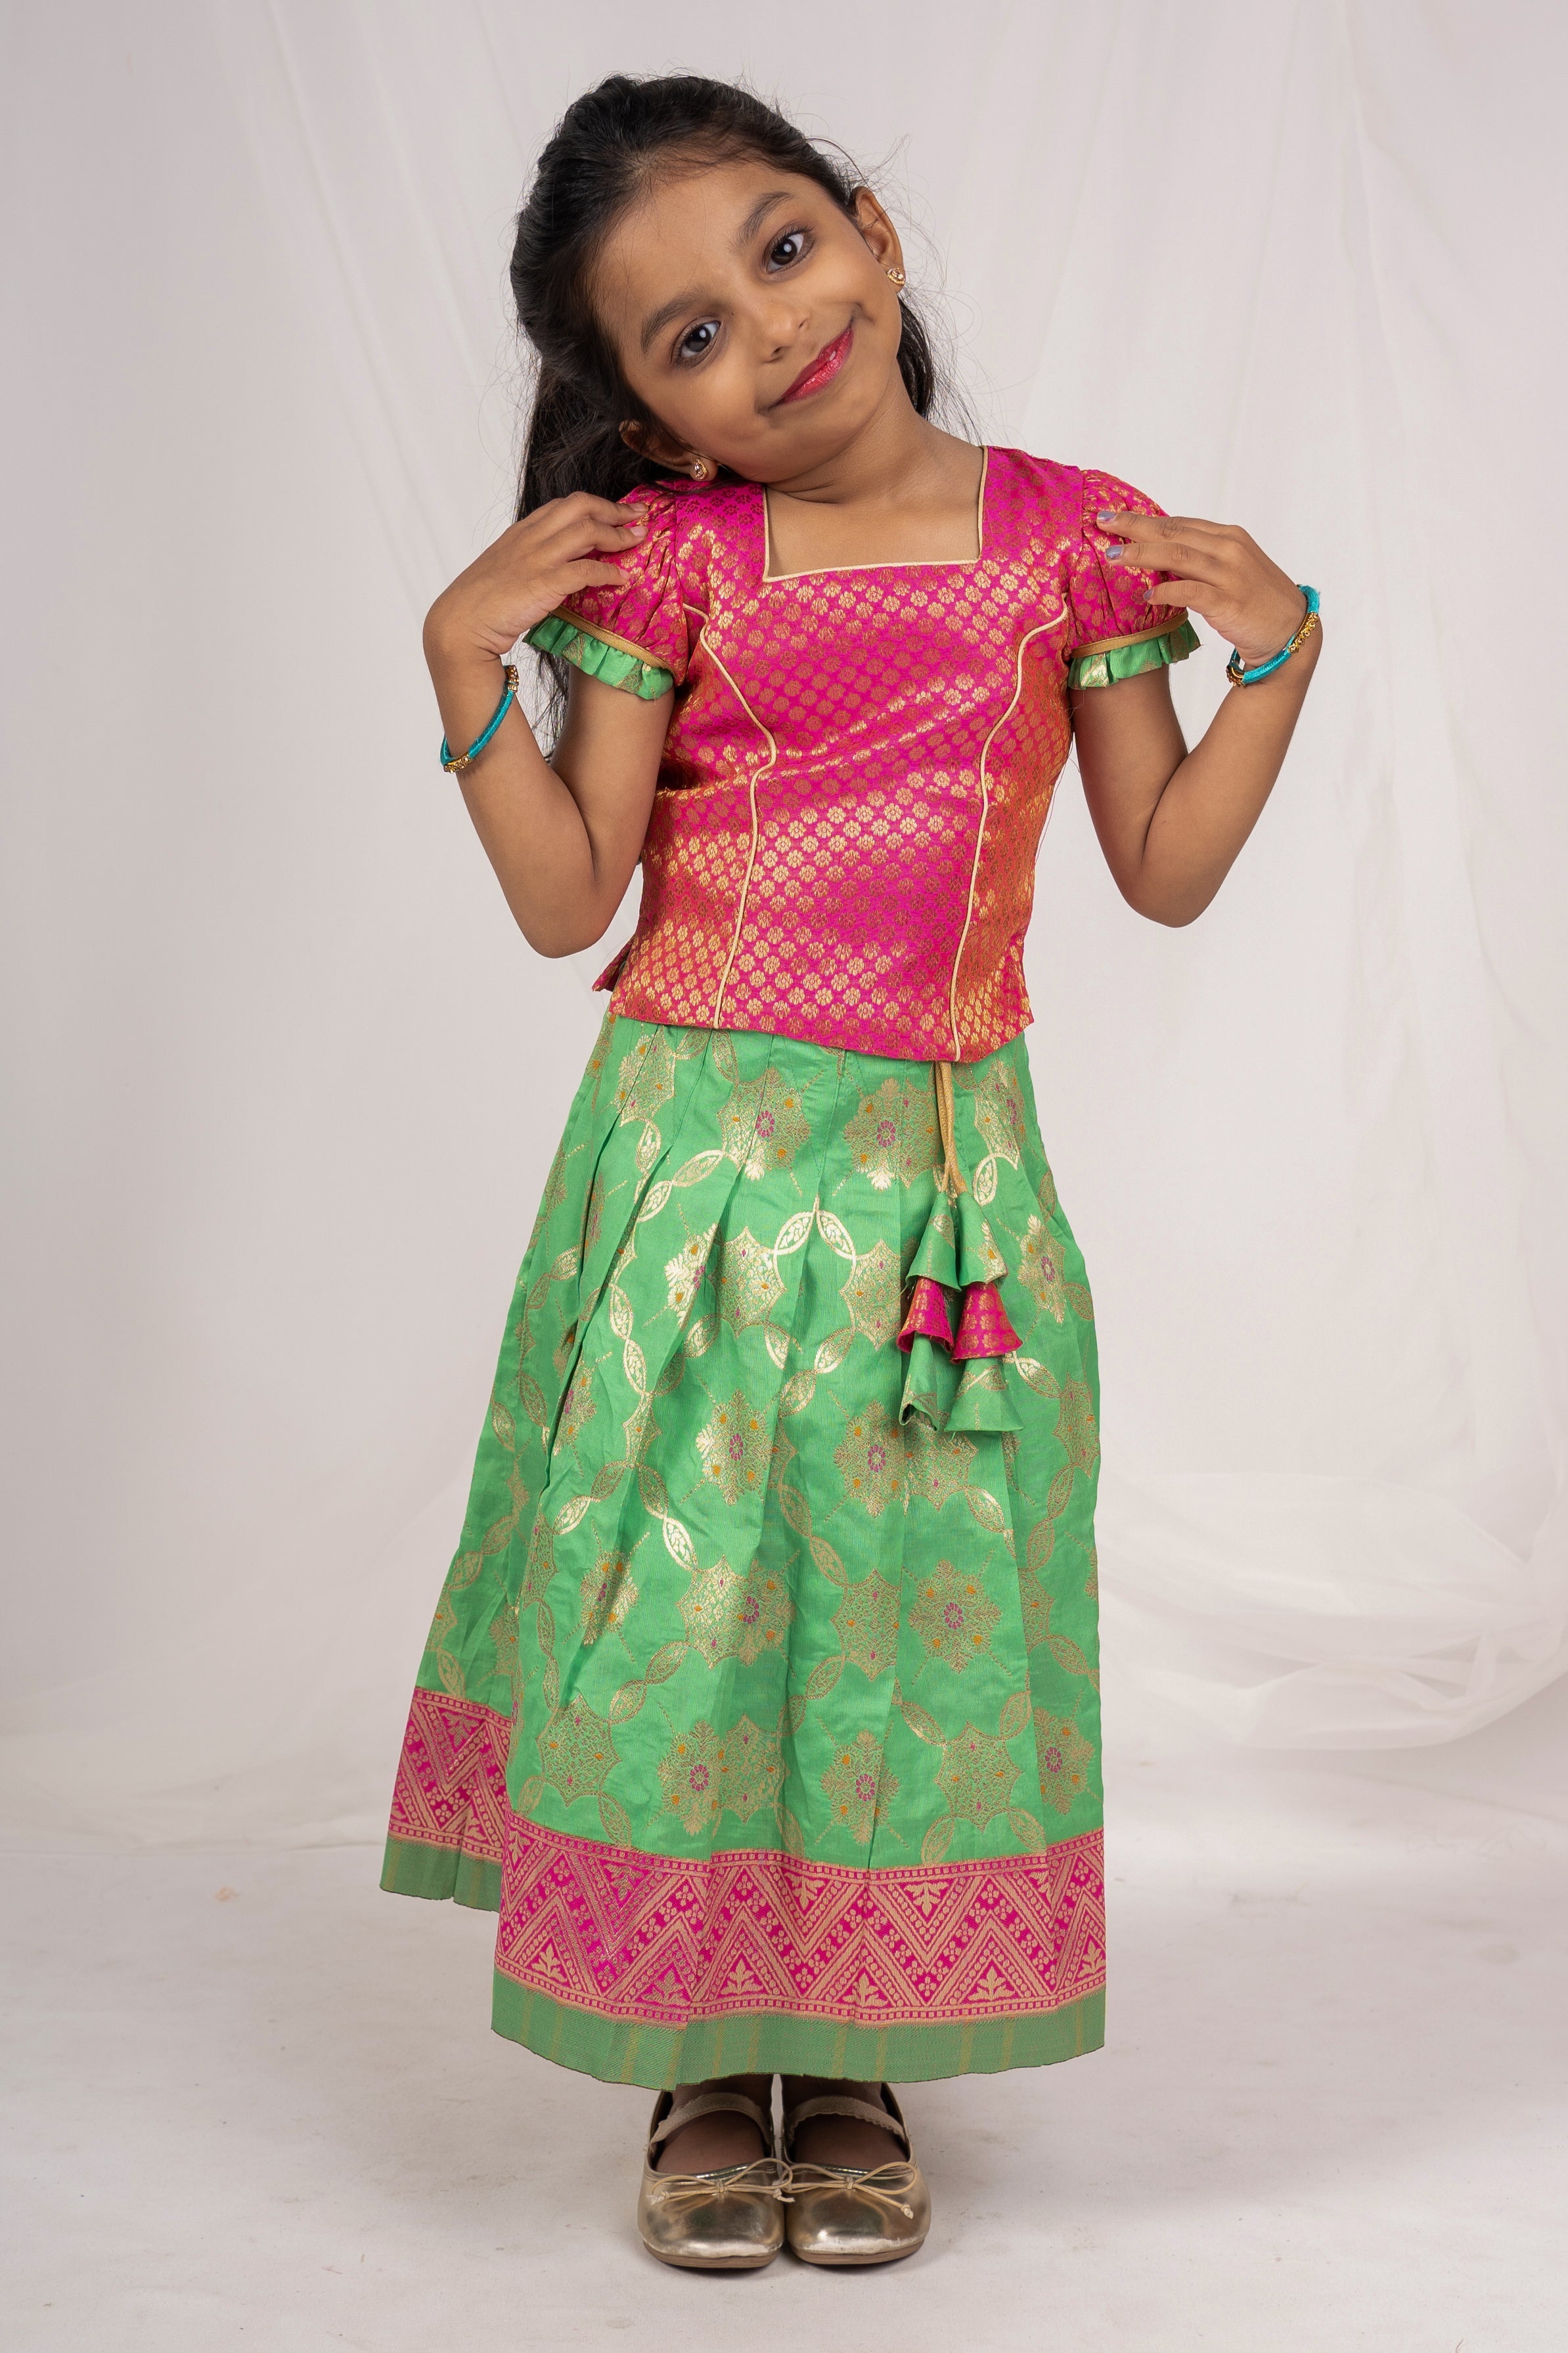 Silk Skirt & Top For Girl Kids | Designer Crop Top Ideas | The